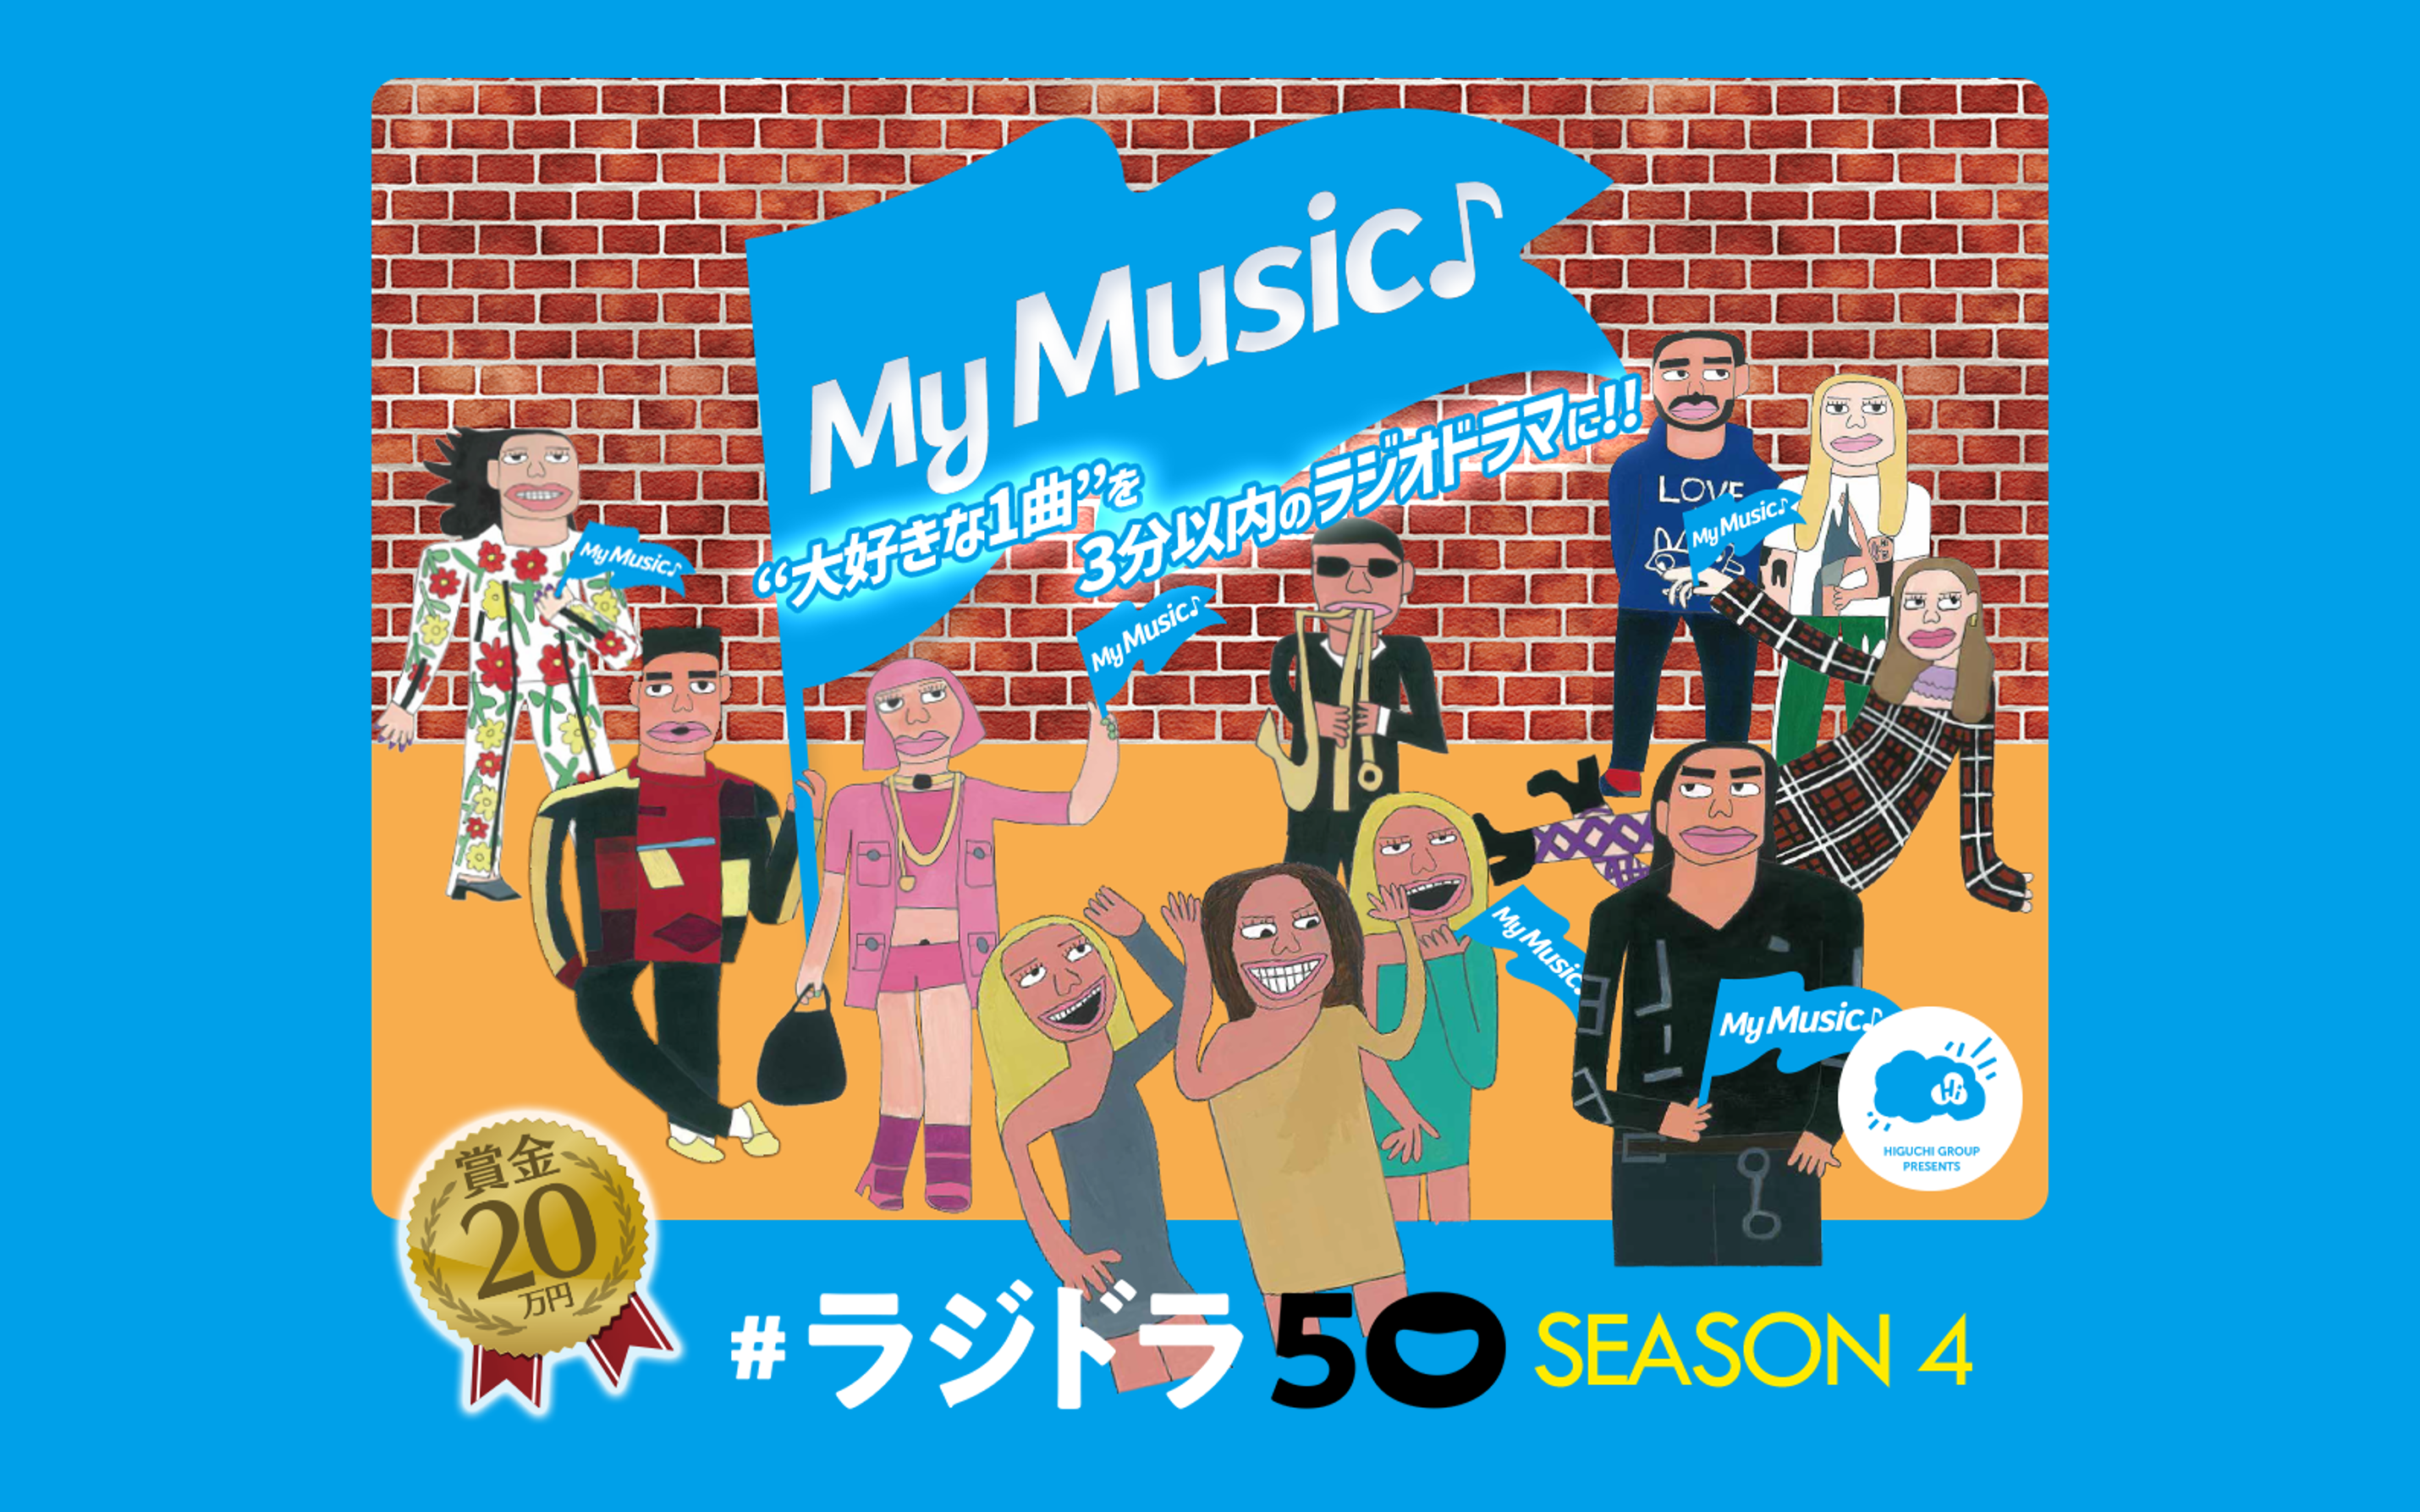 ひぐちグループプレゼンツ # ラジドラ 50 シーズン4『MY MUSIC♪』